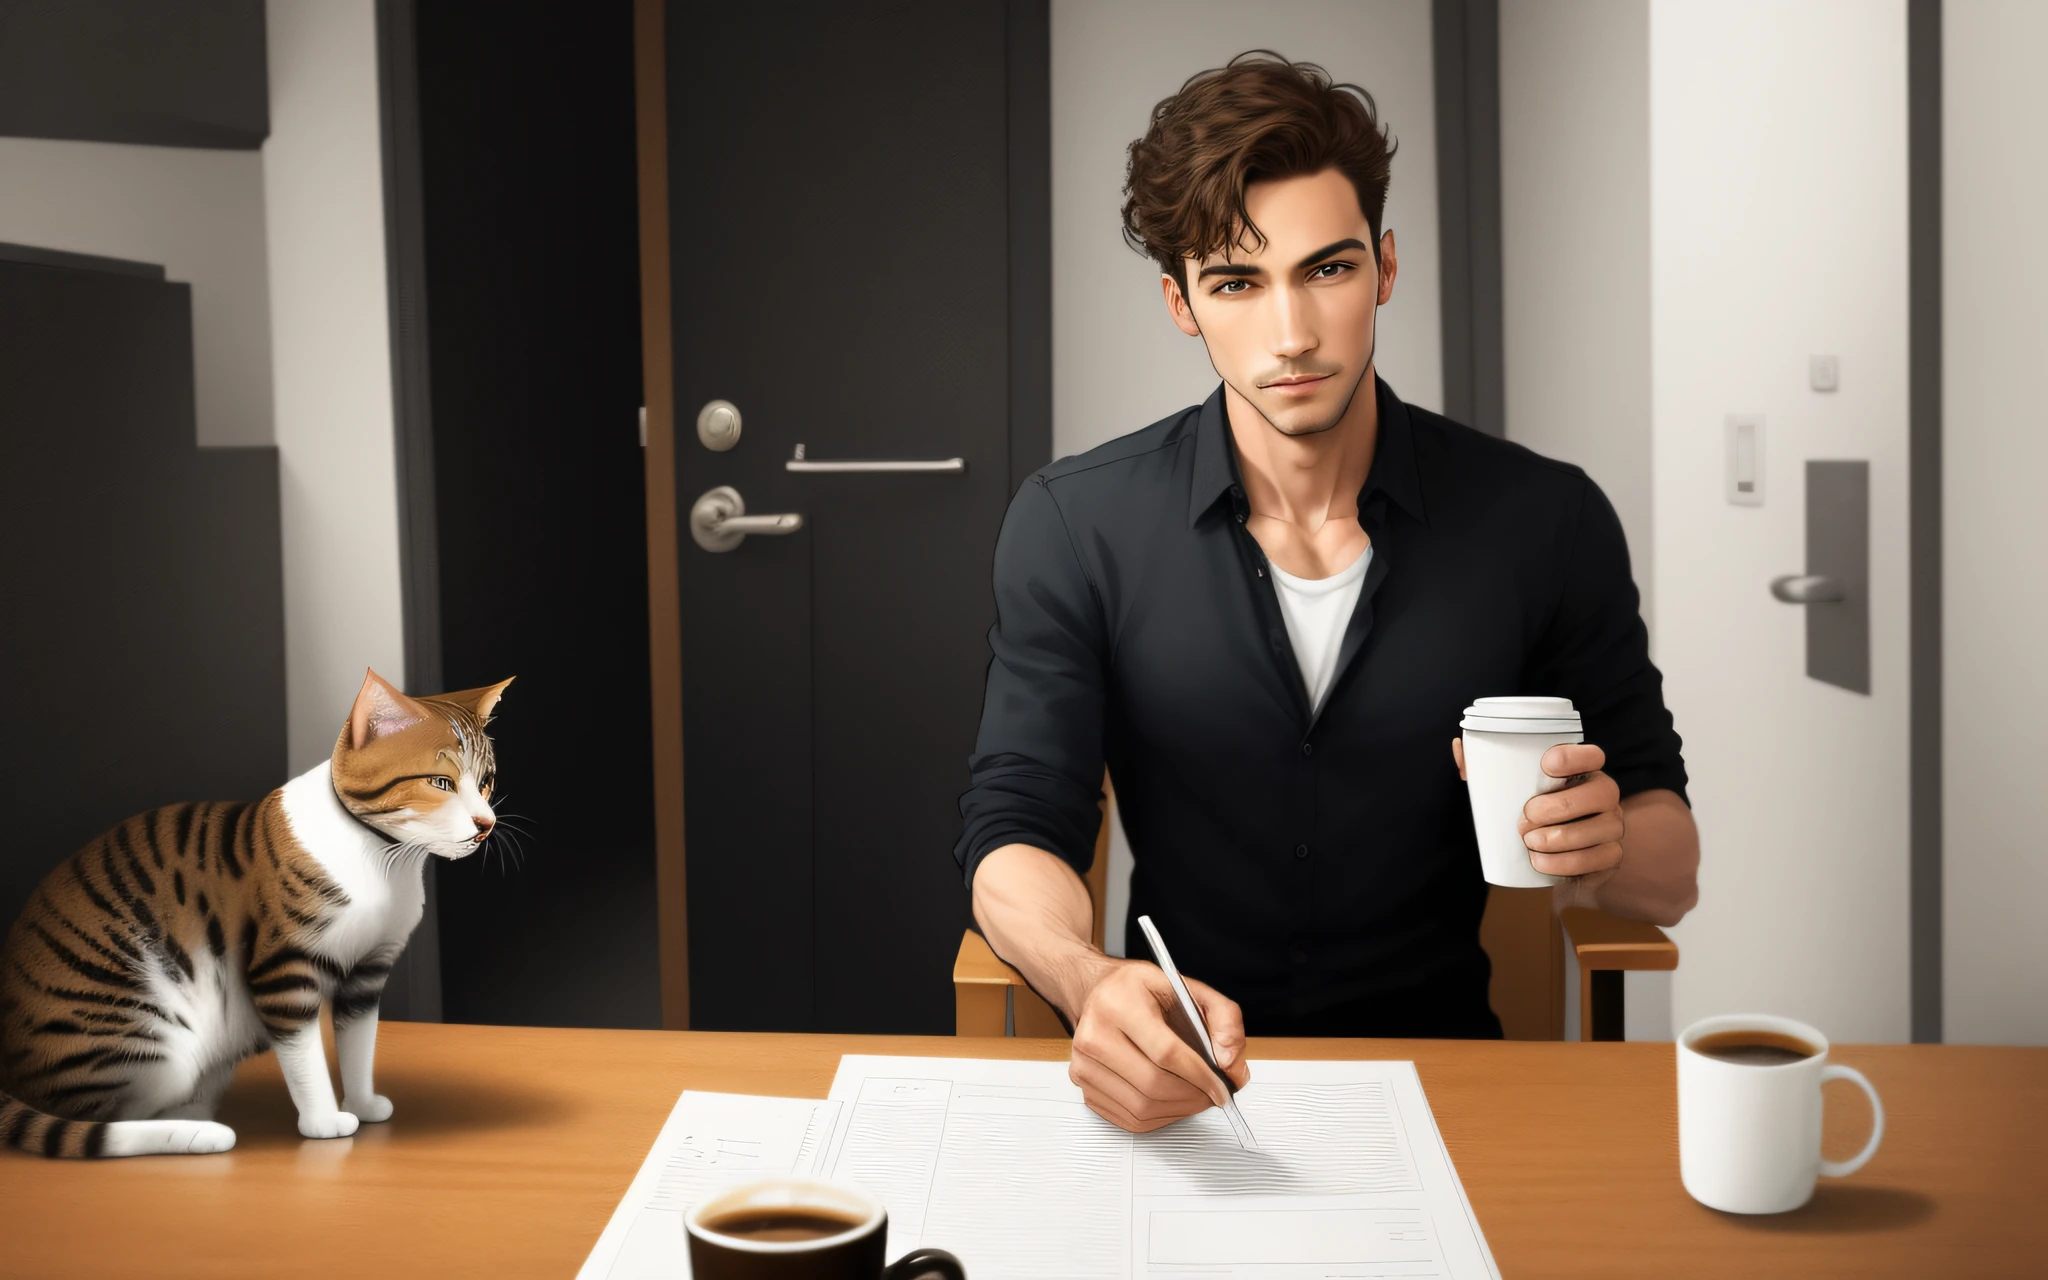 رجل كامل الجسم يمشي منتصبا,  عقد فنجان من القهوة, قطة تتبع نفس اتجاه الرجل, نمط الرسوم المتحركة,  فقط رجل. صورة حقيقية واقعية مفصلة.